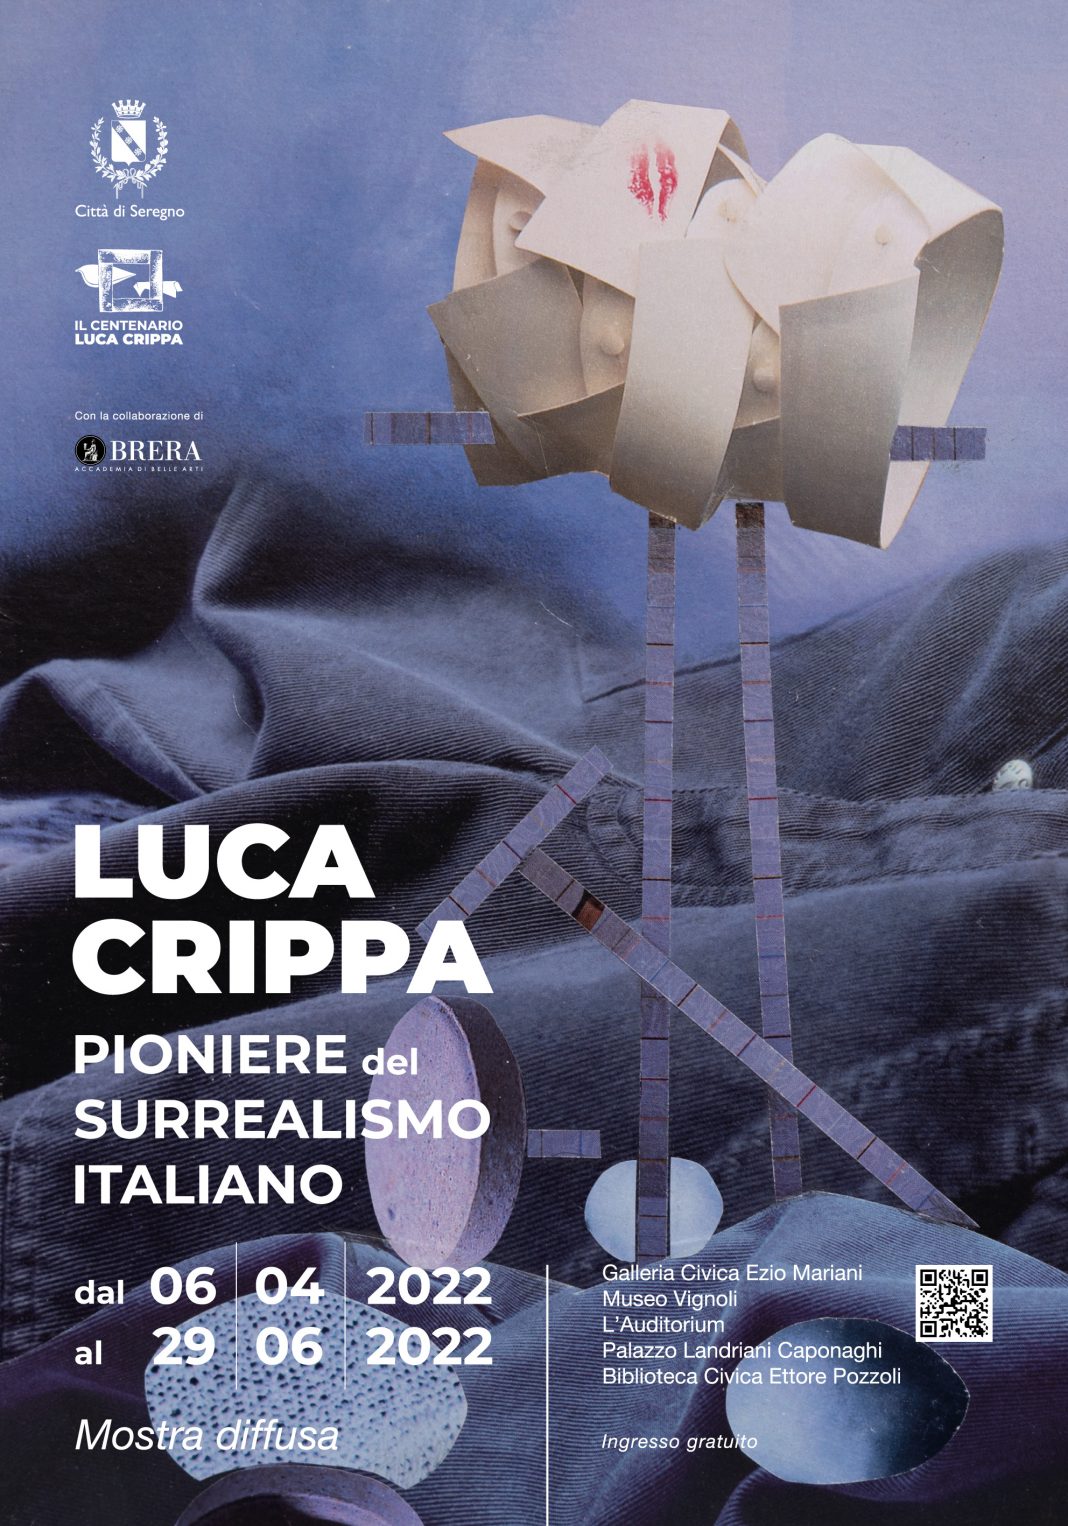 Luca Crippa pioniere del surrealismo italiano. Acquarelli e Opere Grandihttps://www.exibart.com/repository/media/formidable/11/img/0a9/Manifesto_70x100_Crippa-1068x1526.jpg